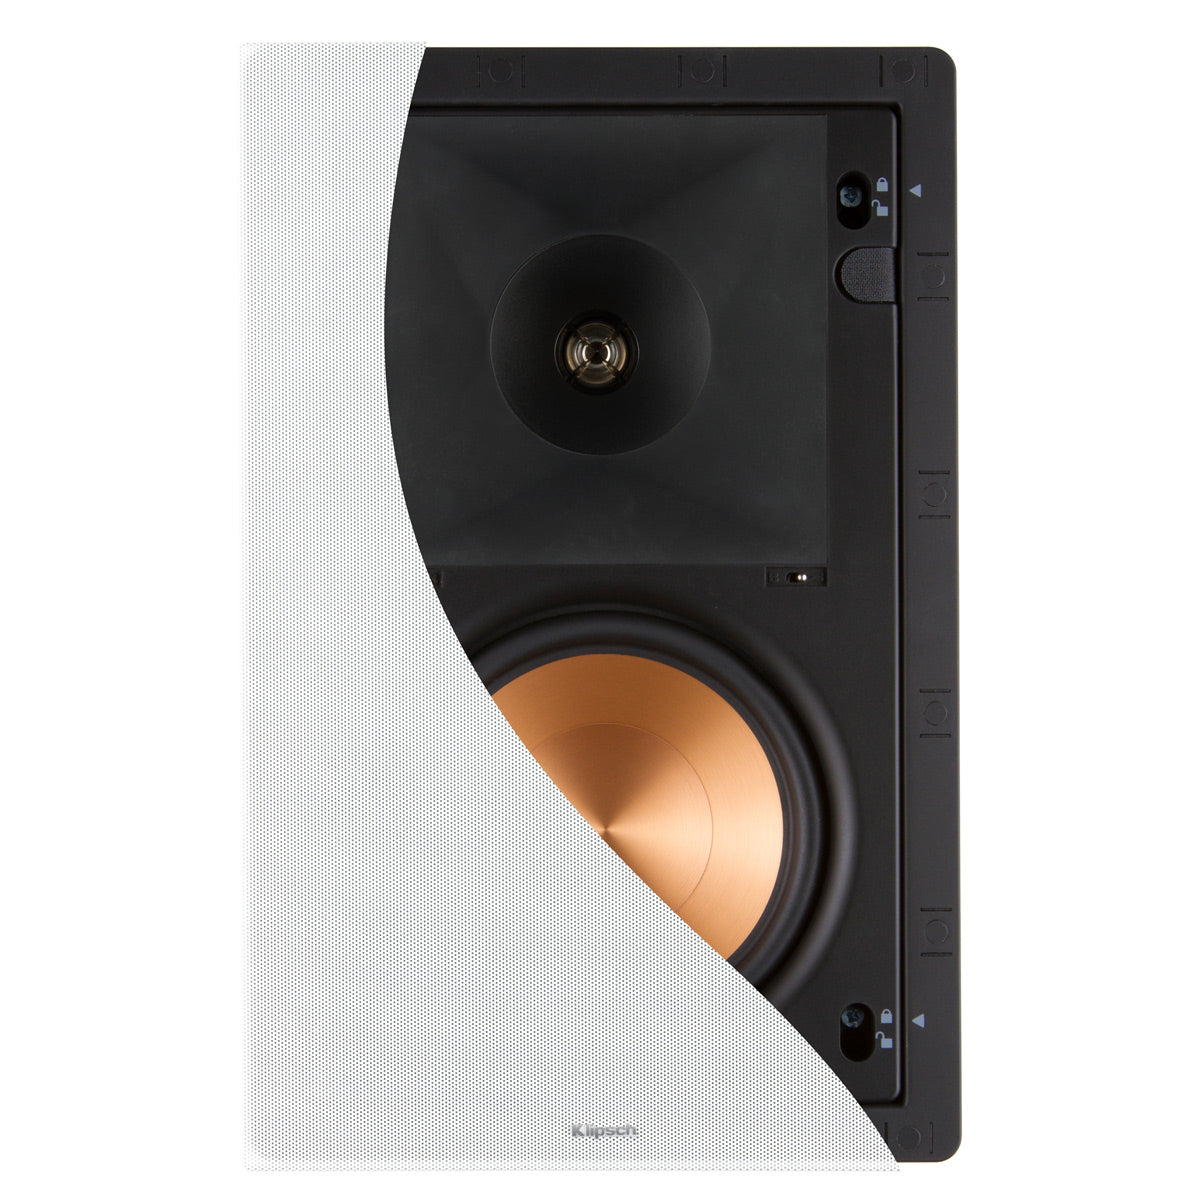 Klipsch PRO-160RPW 6.5" In-Wall Speaker - Each (White)